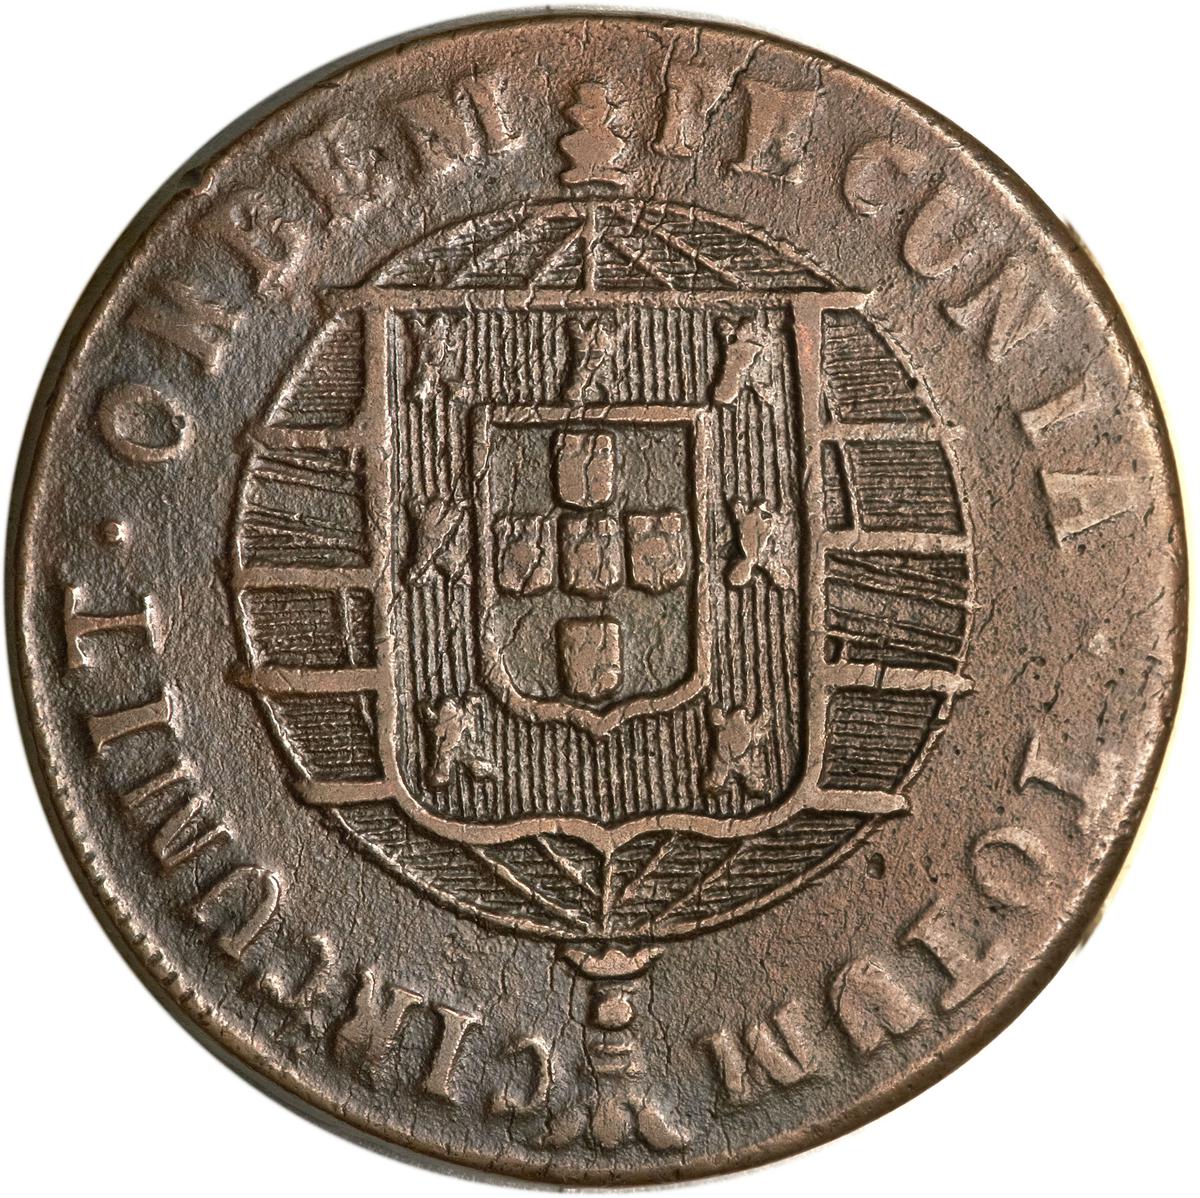 Coin 80 Réis - João VI Brasil undefined